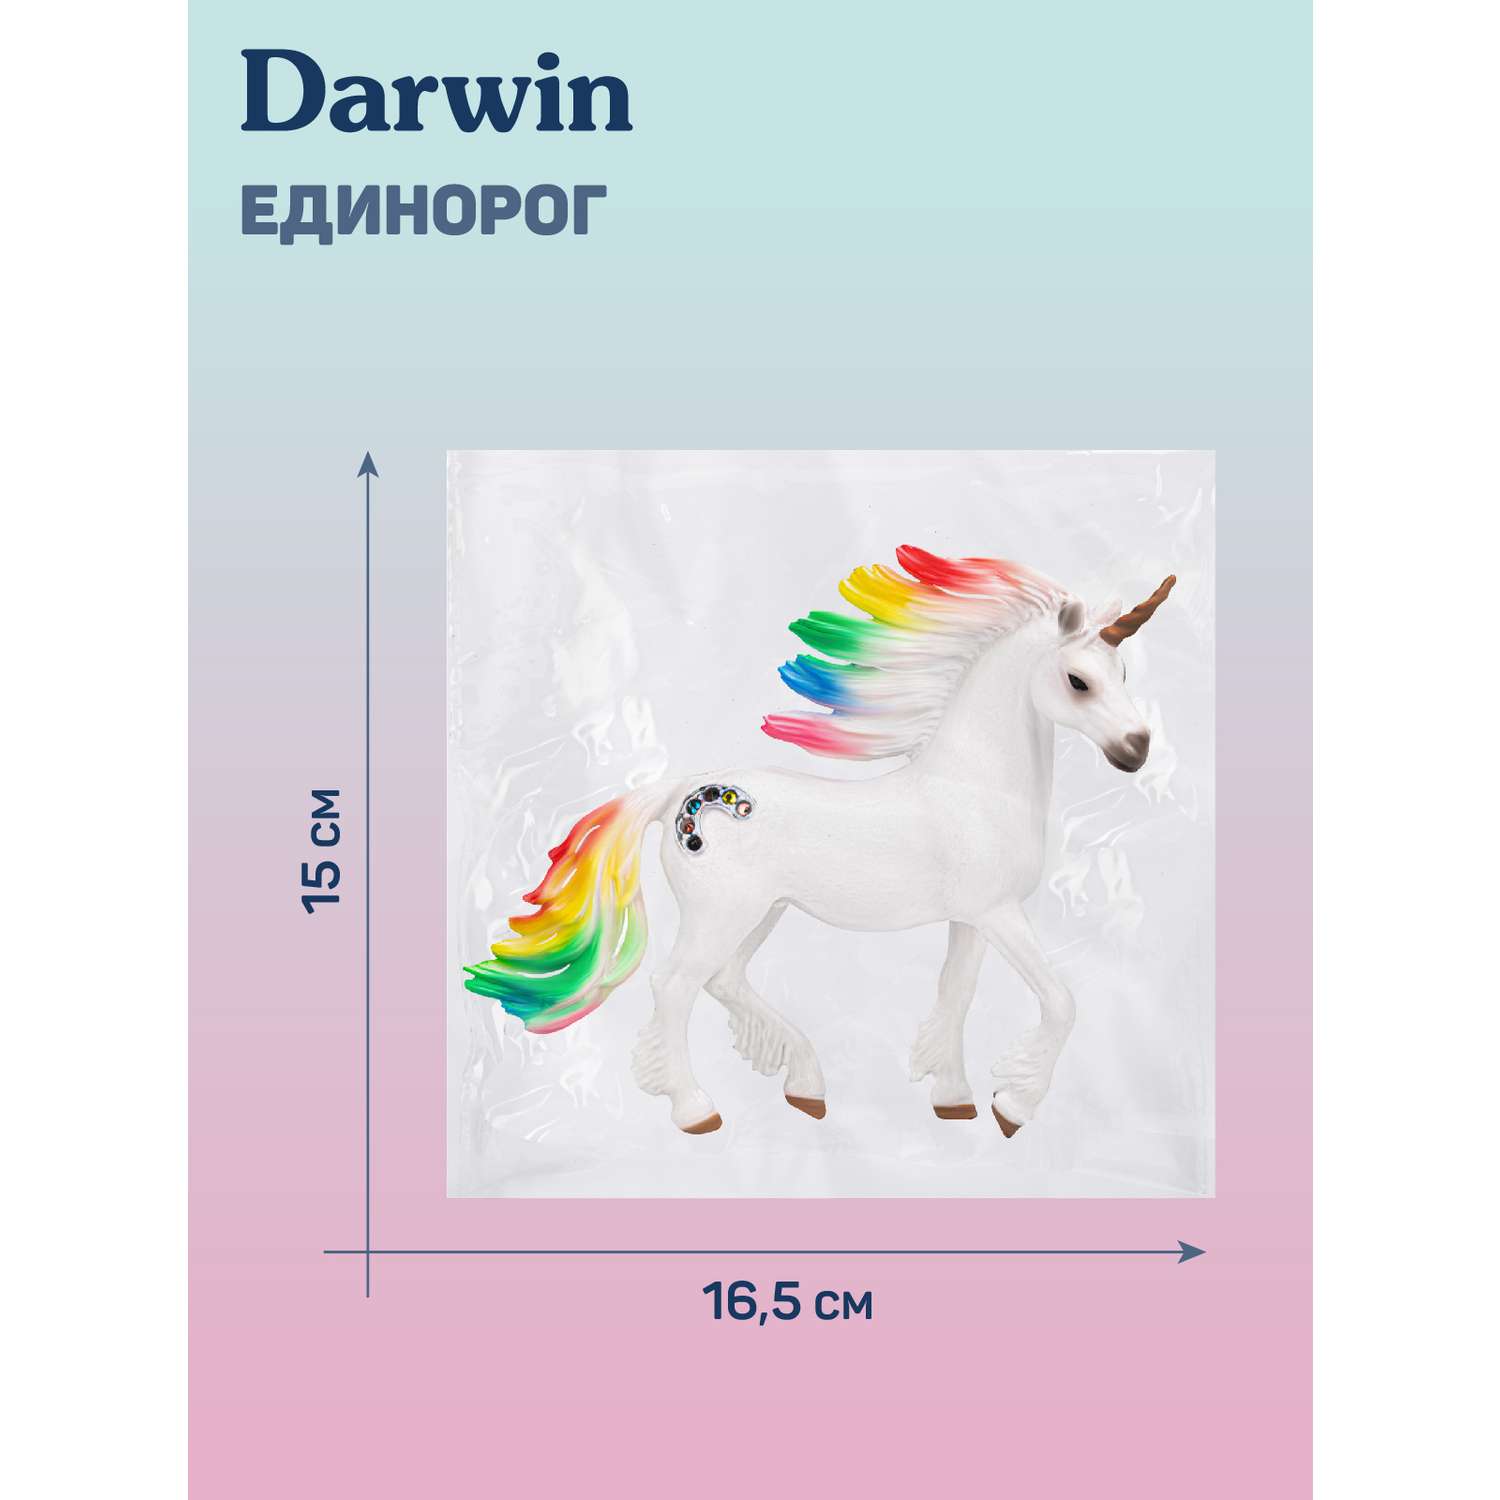 Фигурка животного DARWIN Радужный единорог игрушечный белый - фото 5